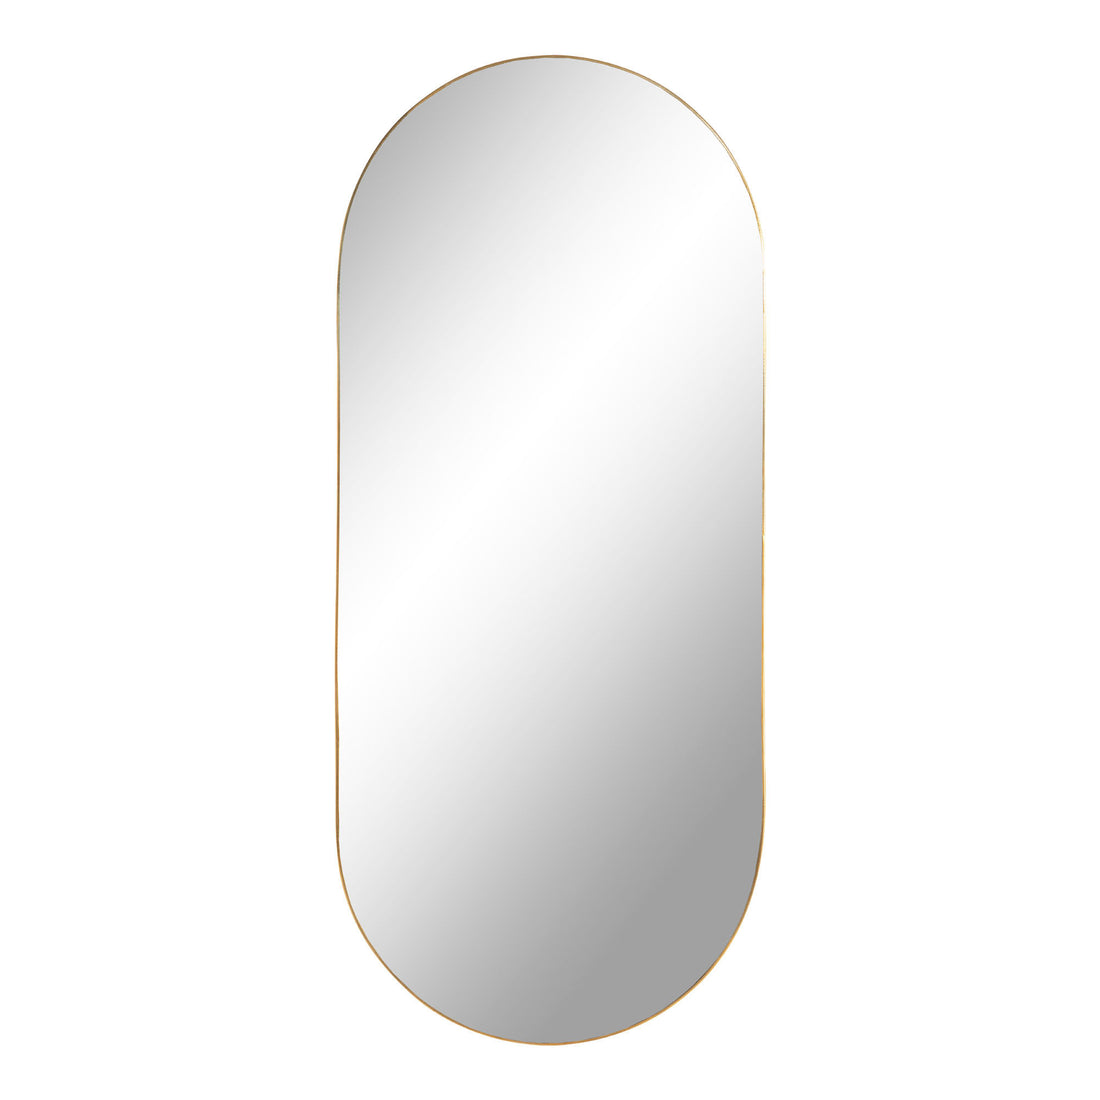 Jersey Mirror Oval - Oval Mirror in Steel, Brass Look, 35x80 cm - 1 - Pcs